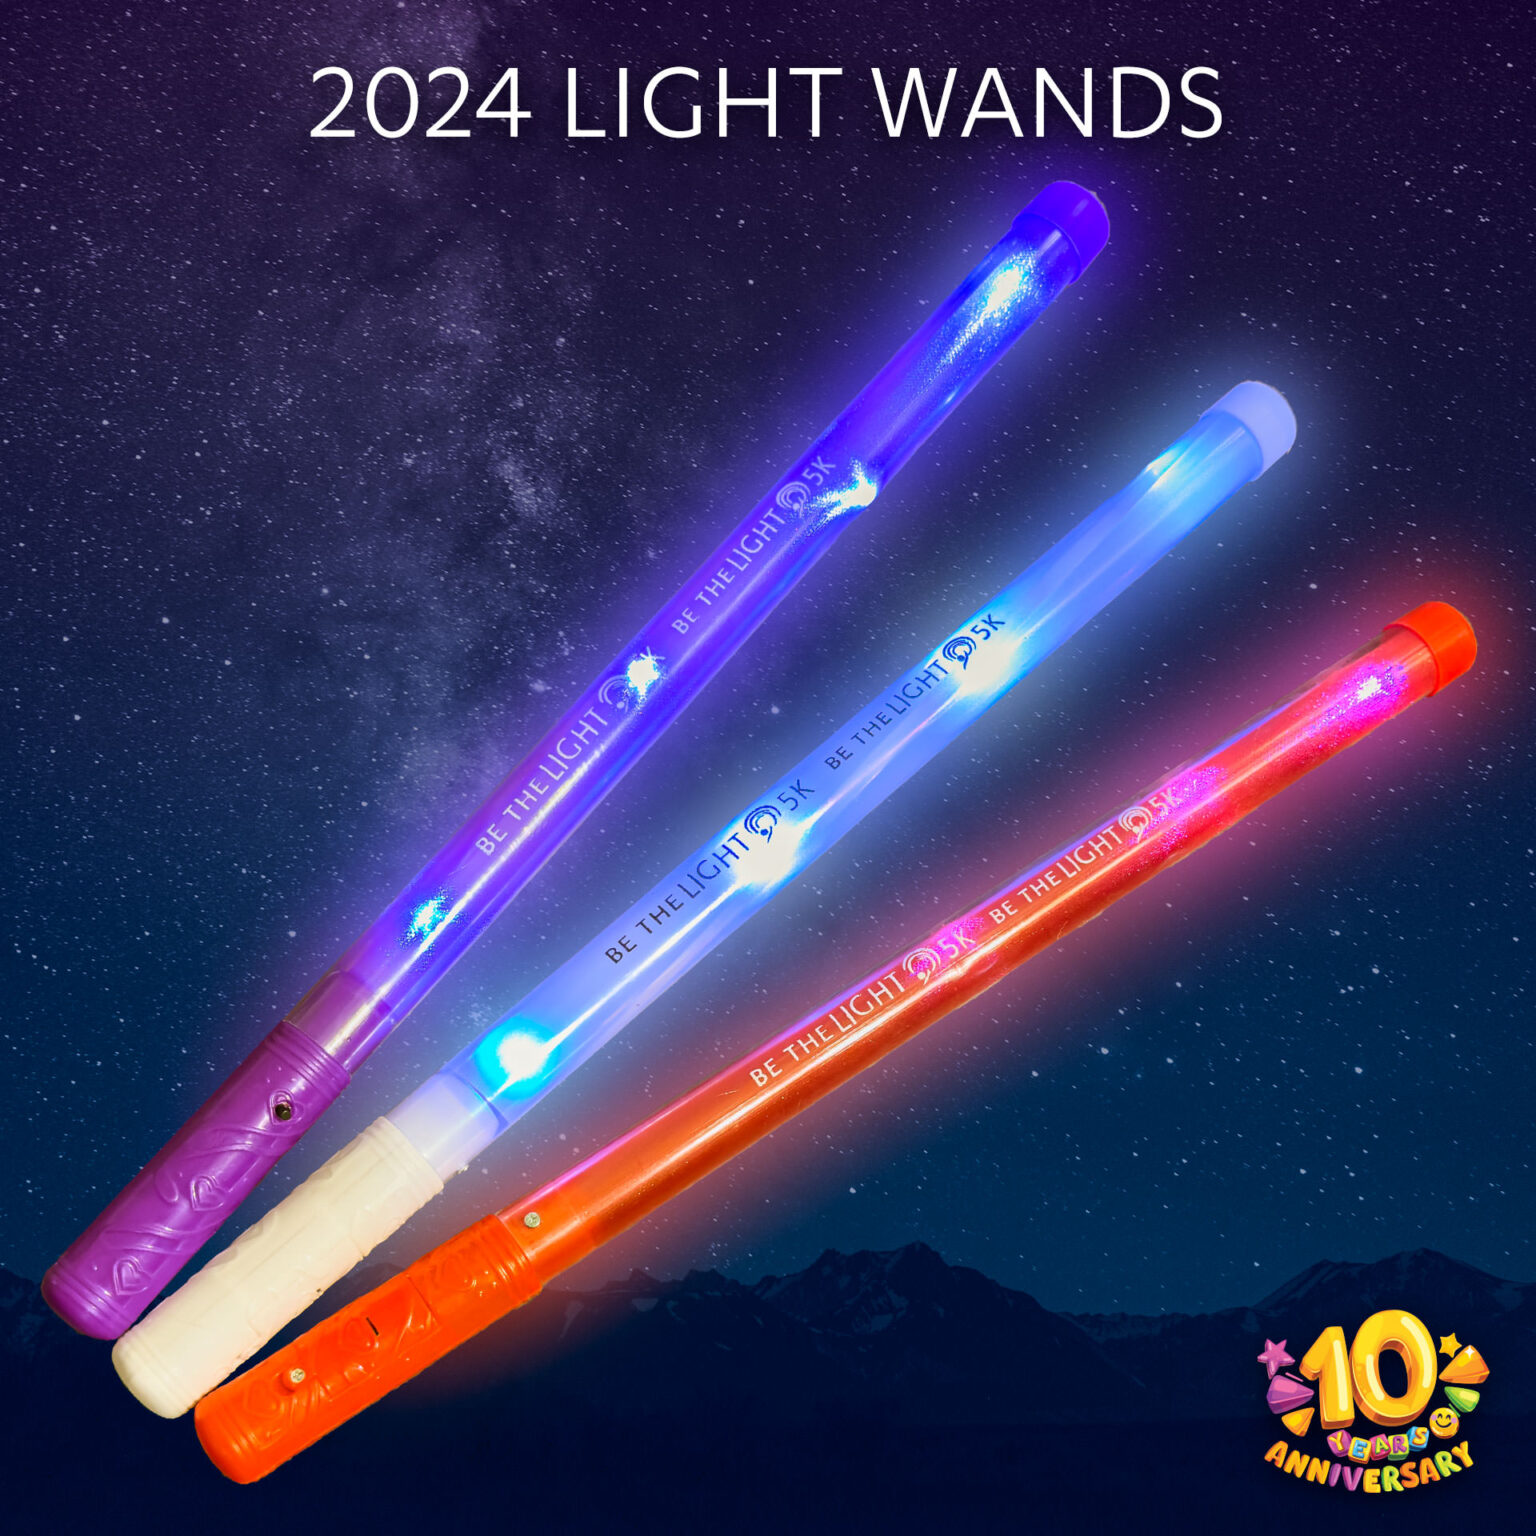 2024 Light Wands